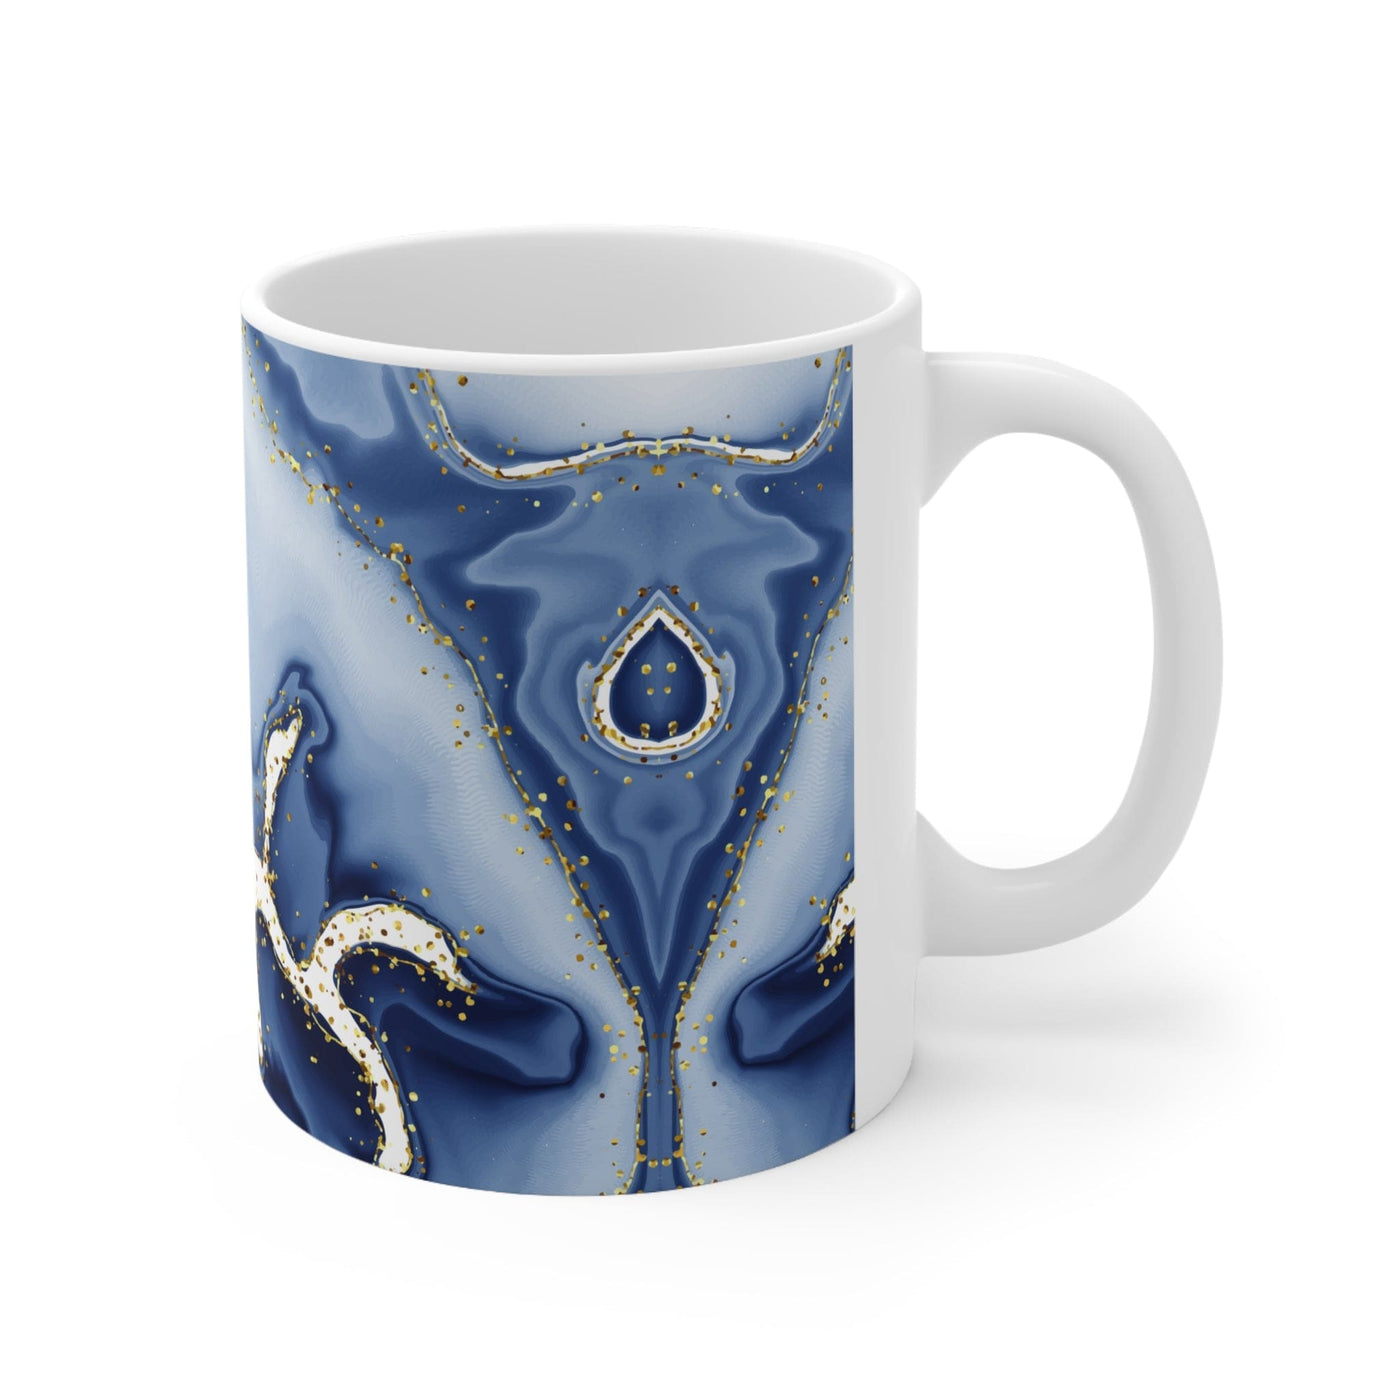 Ceramic Coffee Mug 15oz - Way Maker Blue Design Decorative | Mugs 11oz